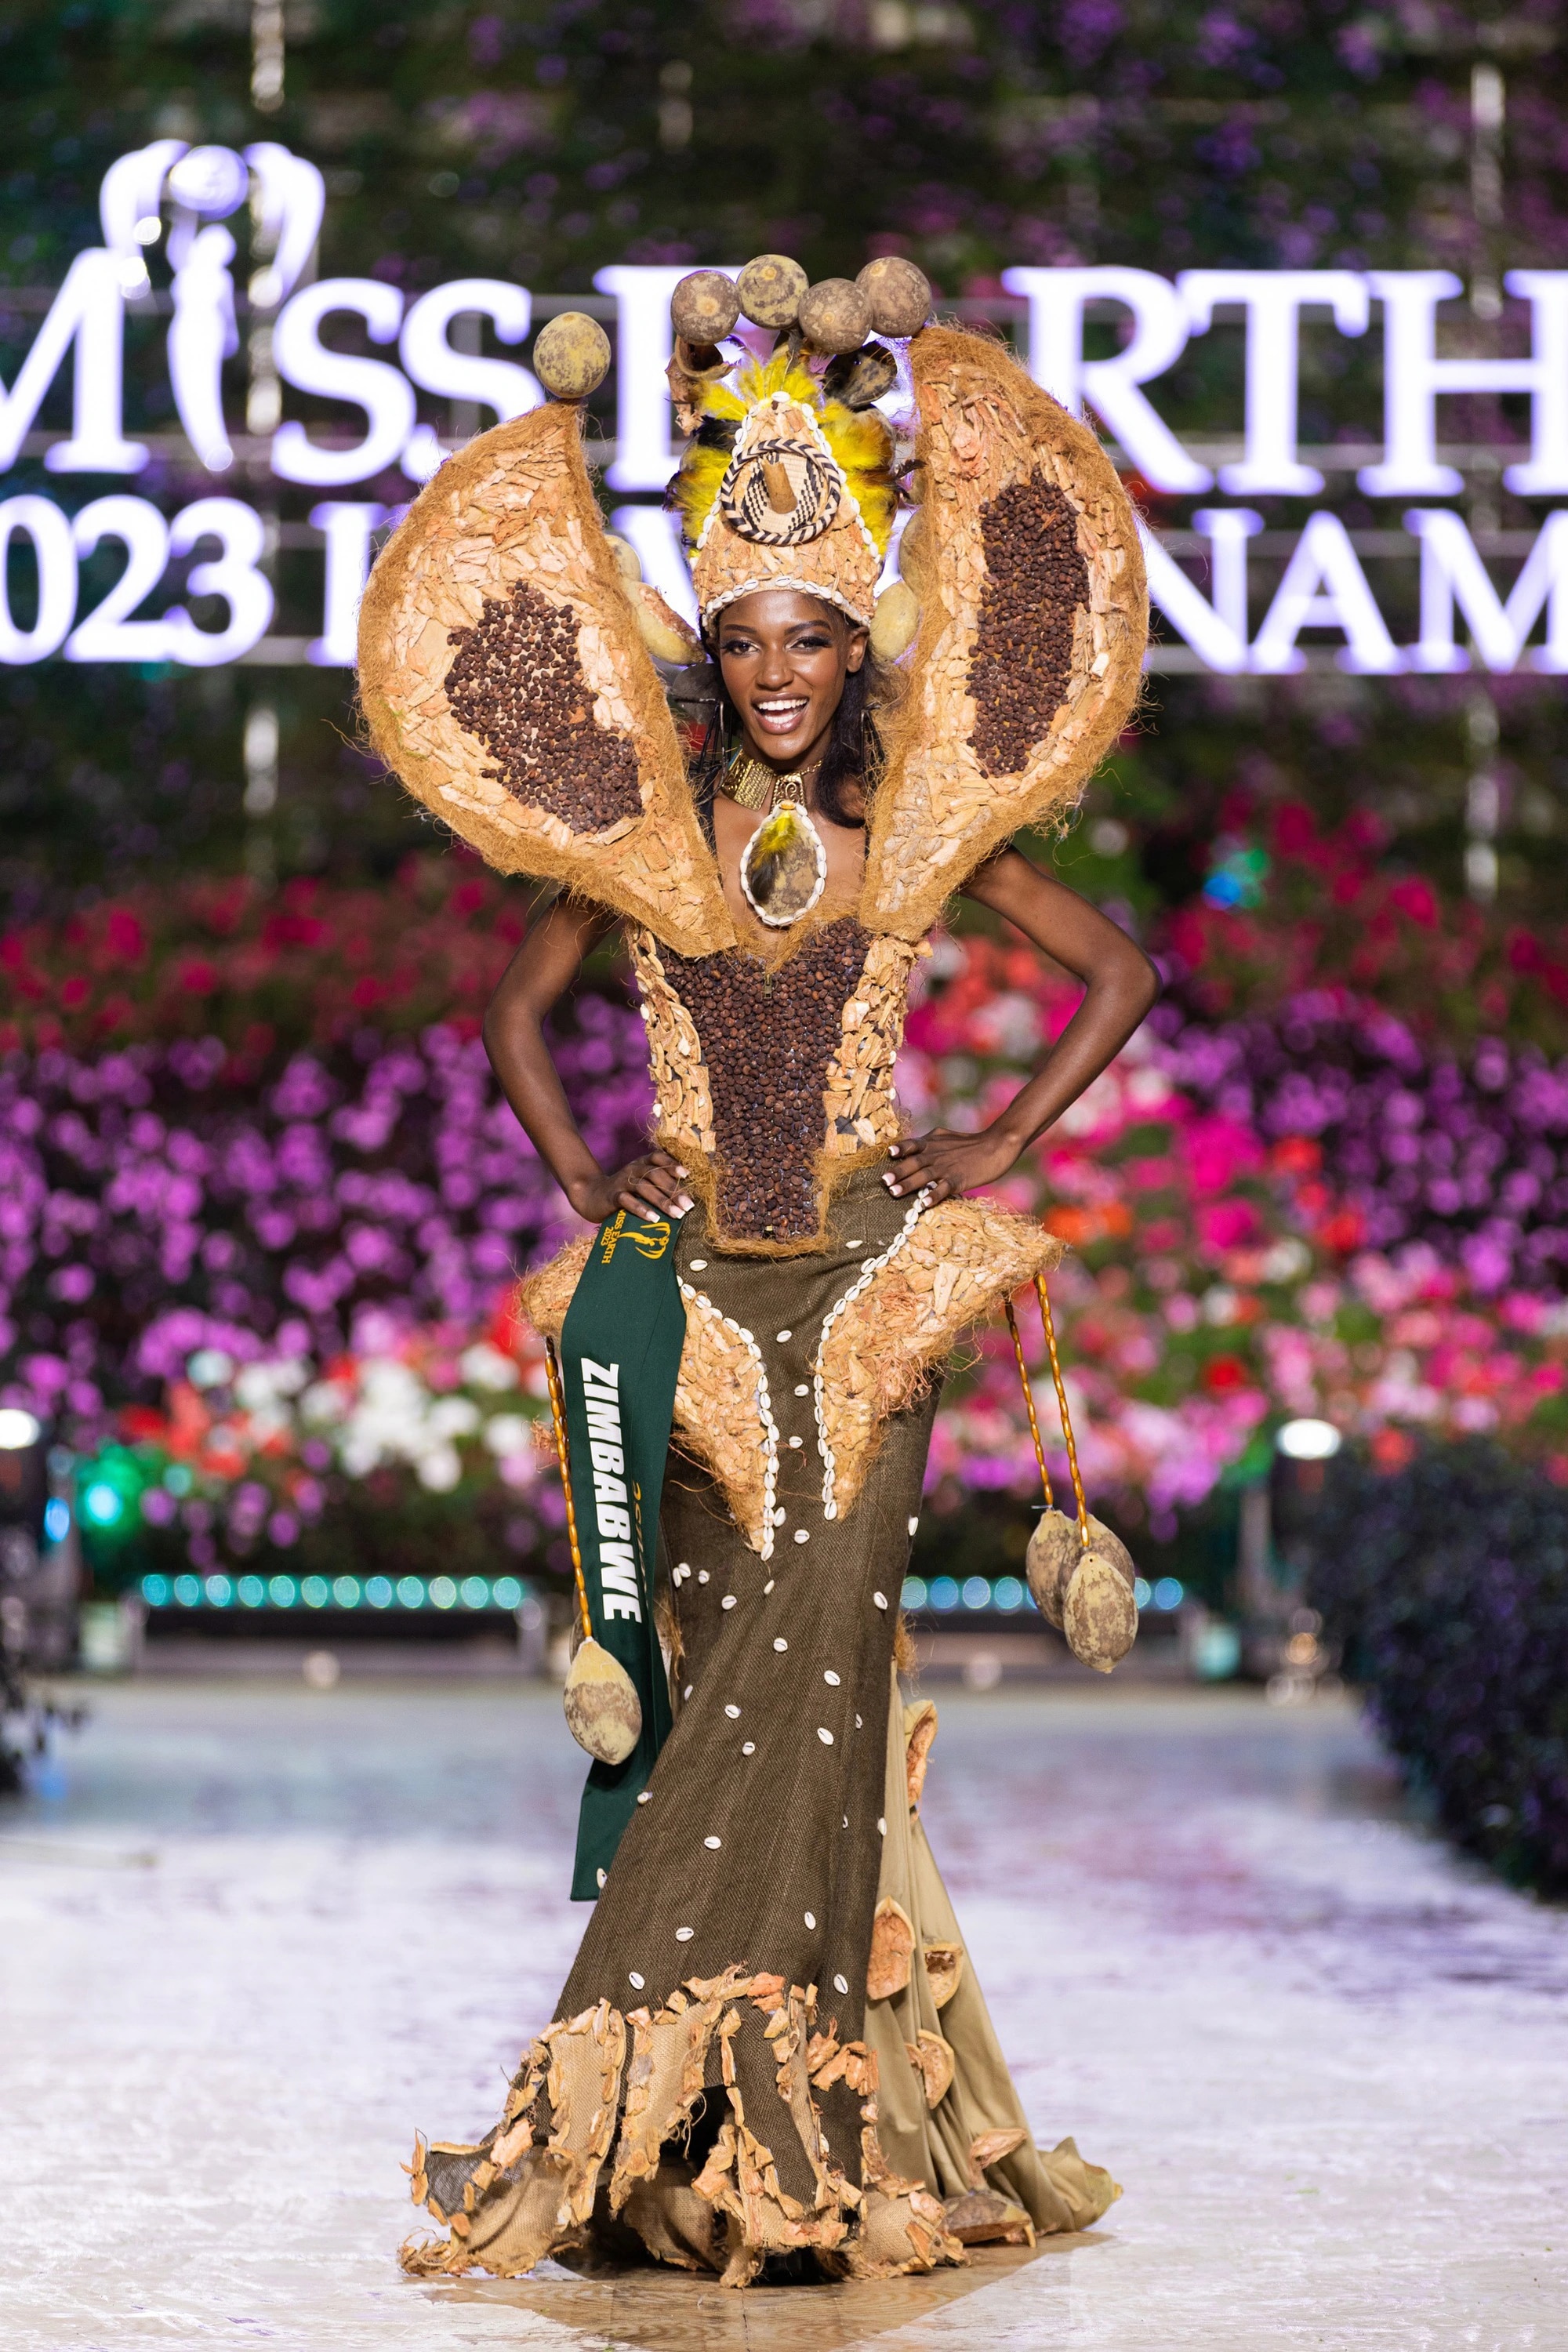 Bán kết Miss Earth 2023 màn trình Trang phục Dân tộc bùng nổ hình ảnh cỏ hoa, muông thú - Ảnh 36.